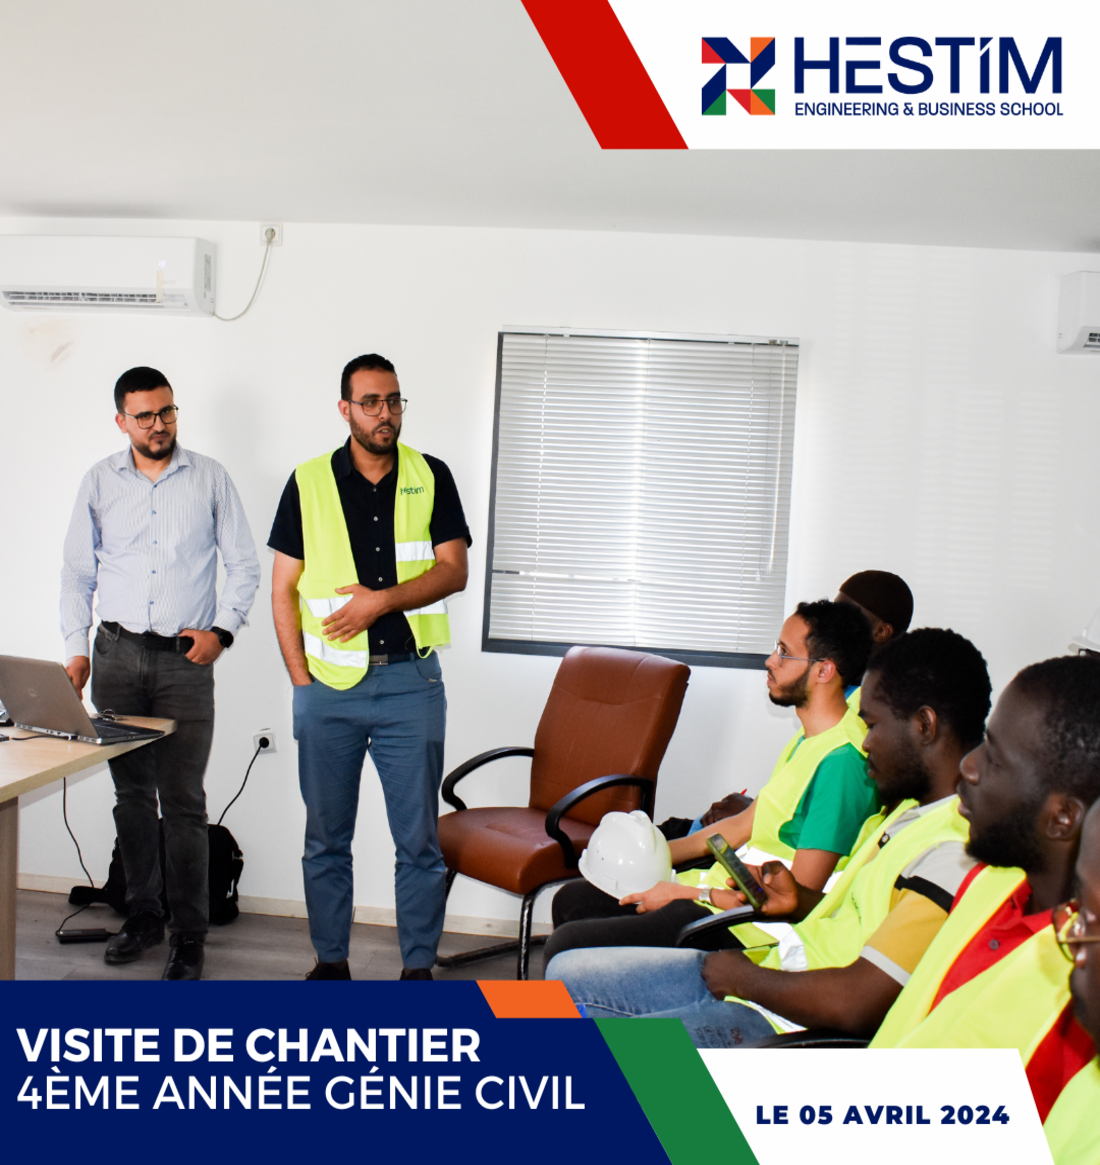 Hestim - La visite de chantier routier au profit de nos étudiants en 4ème année de Génie Civil